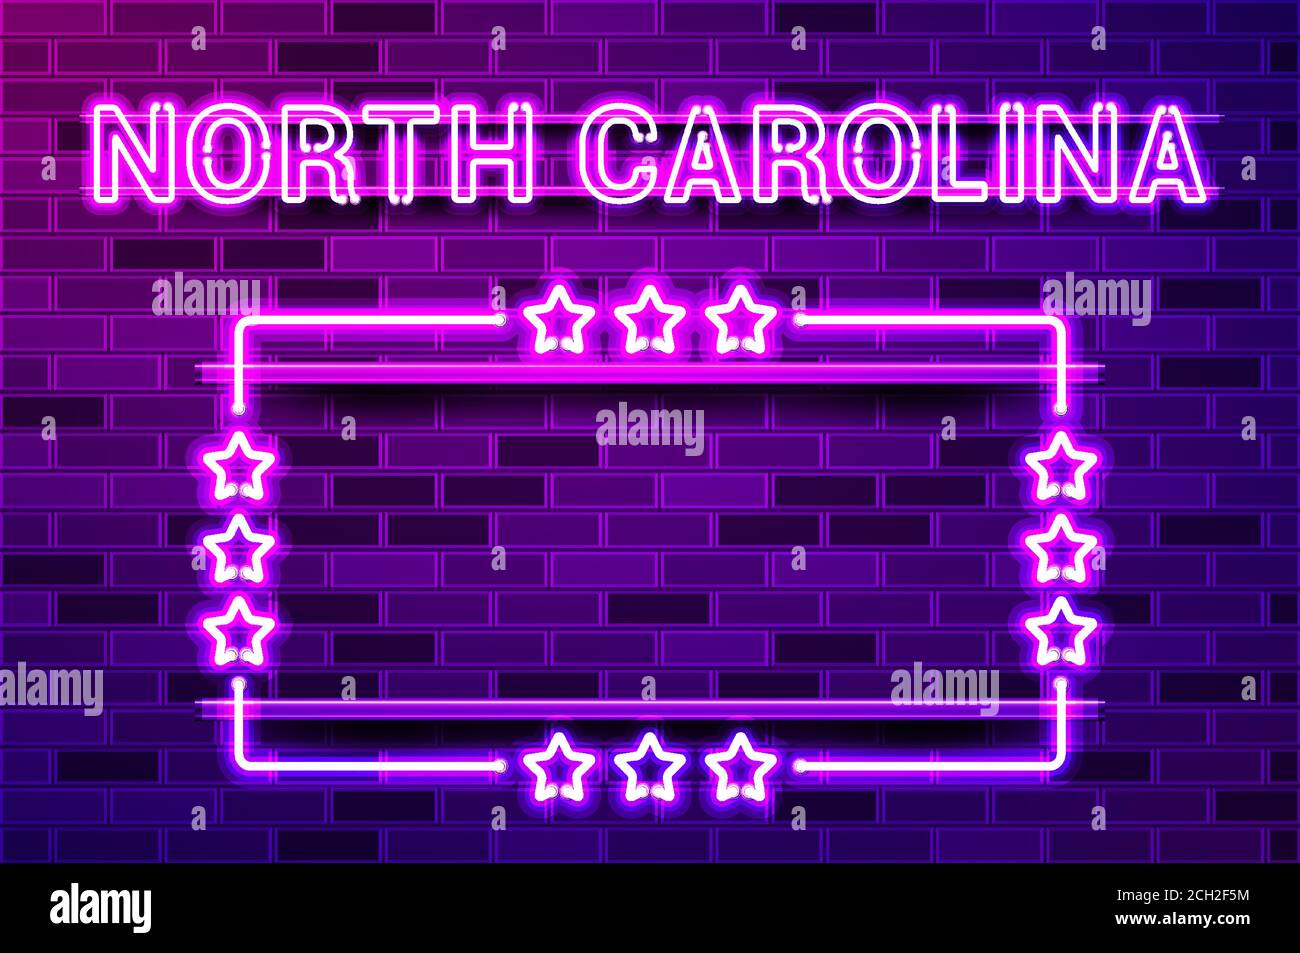 Caroline du Nord États des États-Unis lettrage au néon violet brillant et un cadre rectangulaire avec des étoiles. Illustration vectorielle réaliste. Mur de briques violets, violet glo Illustration de Vecteur